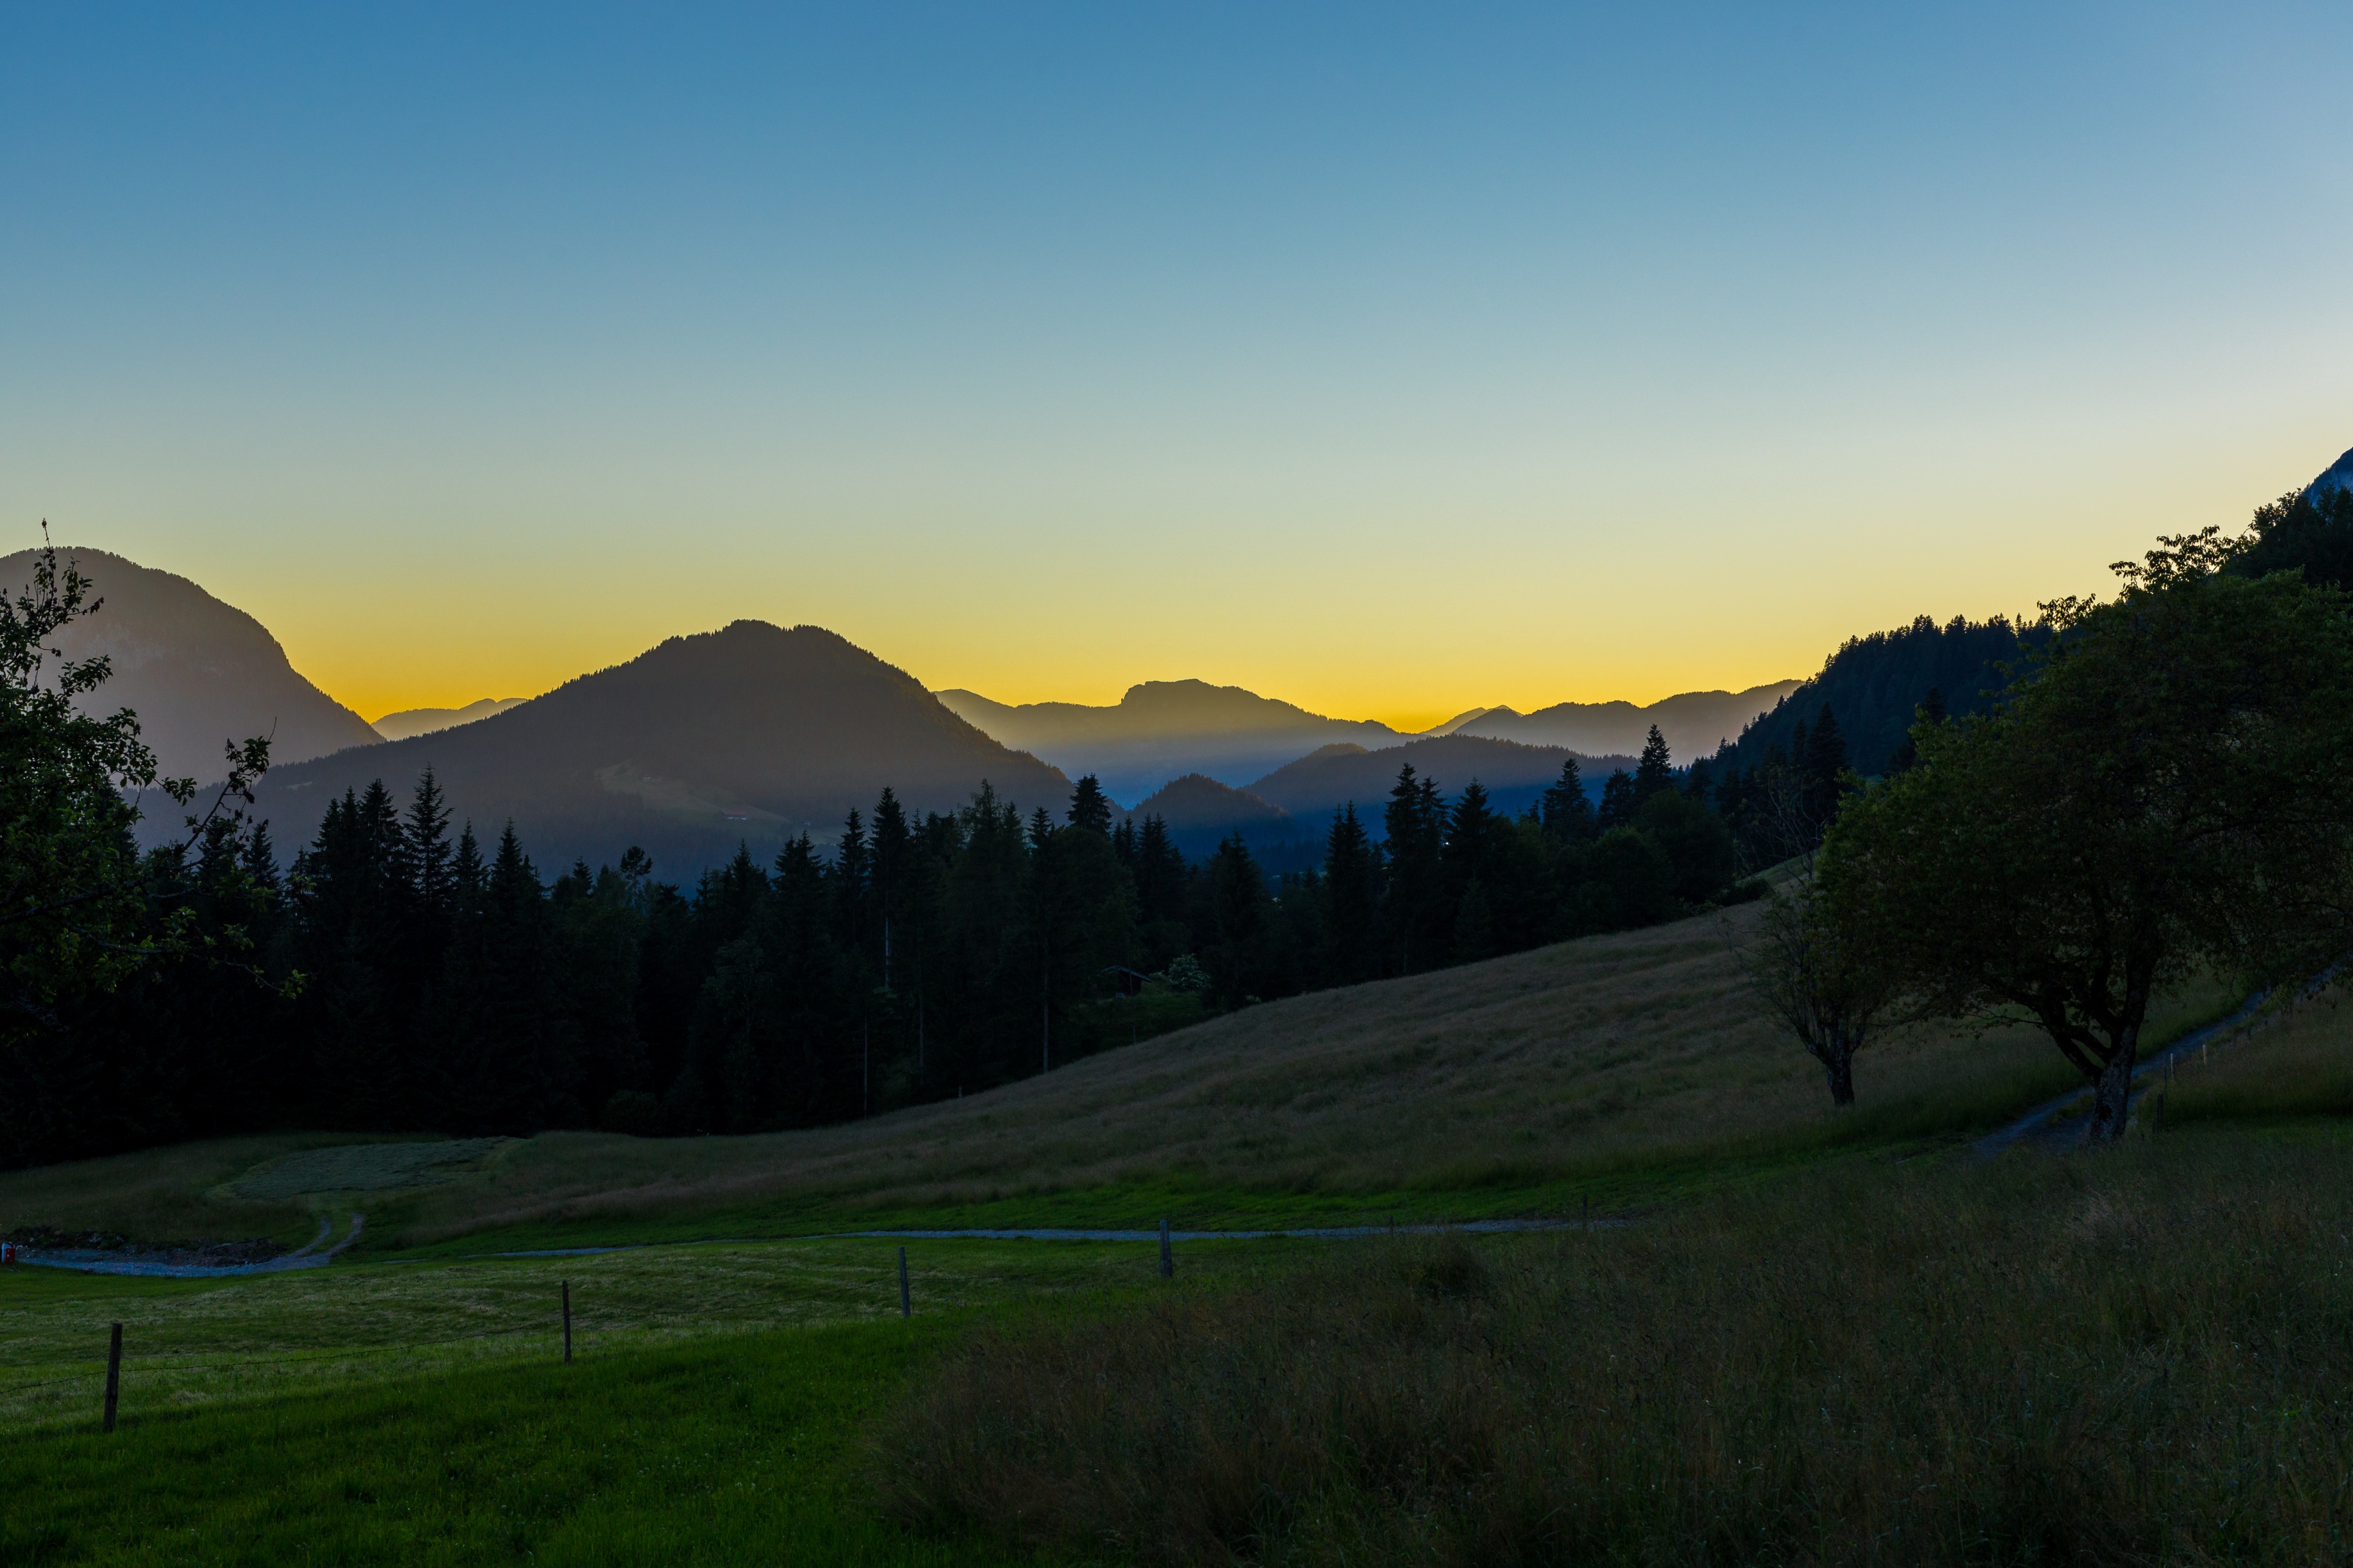 Sonnenuntergang am Kaisergebirge, Tirol, 160623, ako